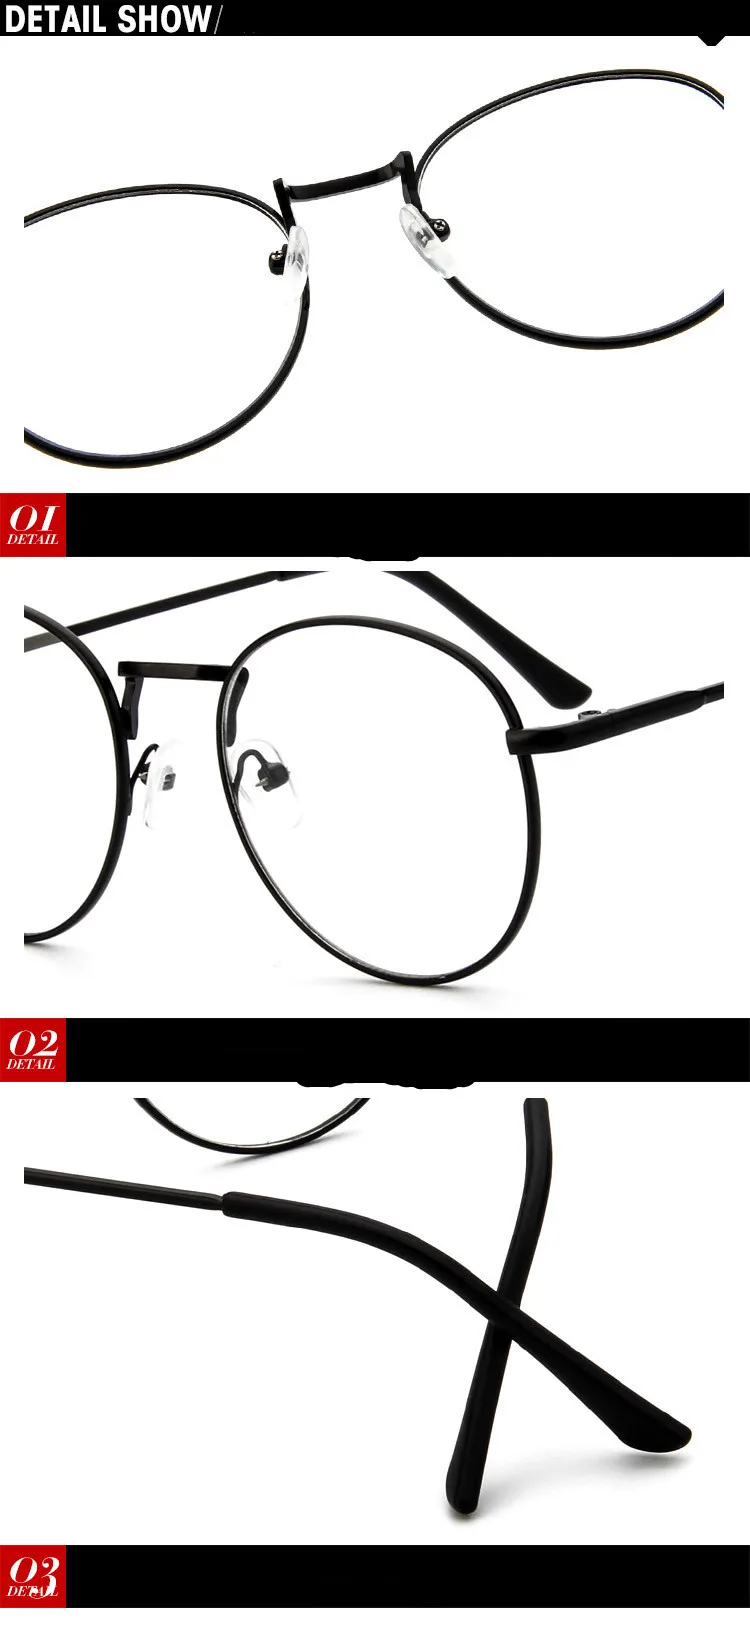 Свет TR Ретро прозрачные линзы Nerd оправ для мужчин мужской овальной маленькие круглые очки для женщин из золотистого металла